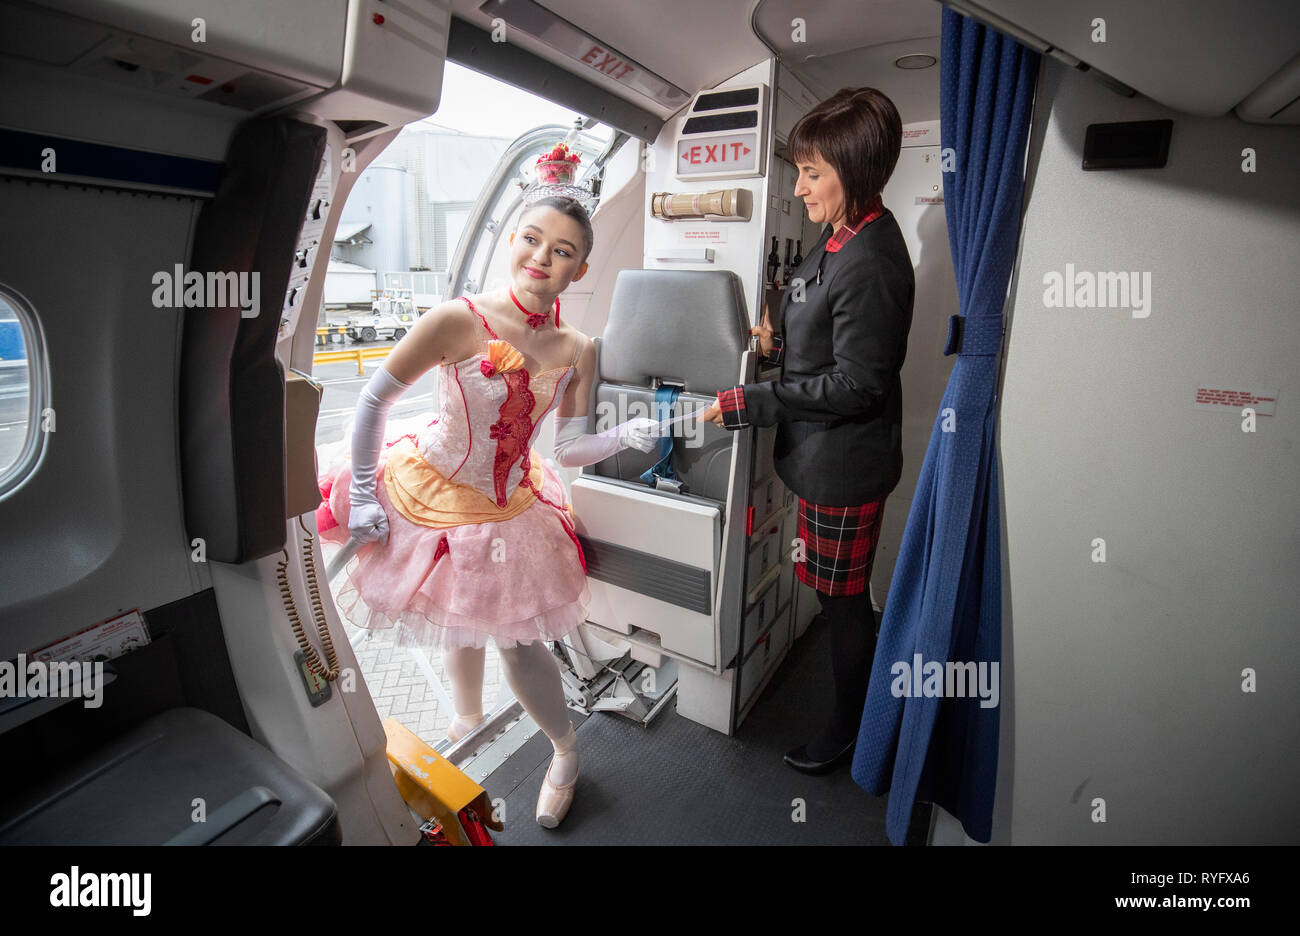 Kawalek Alice danseuse de ballet écossais entre dans un avion d'embarquement de caractère comme elle rencontre hôtesse Loganair Lynne Smith (à droite) lors d'un photocall à l'aéroport de Glasgow en avance sur leur tournée de highland fling 'Wee Hansel & Gretel'. Banque D'Images